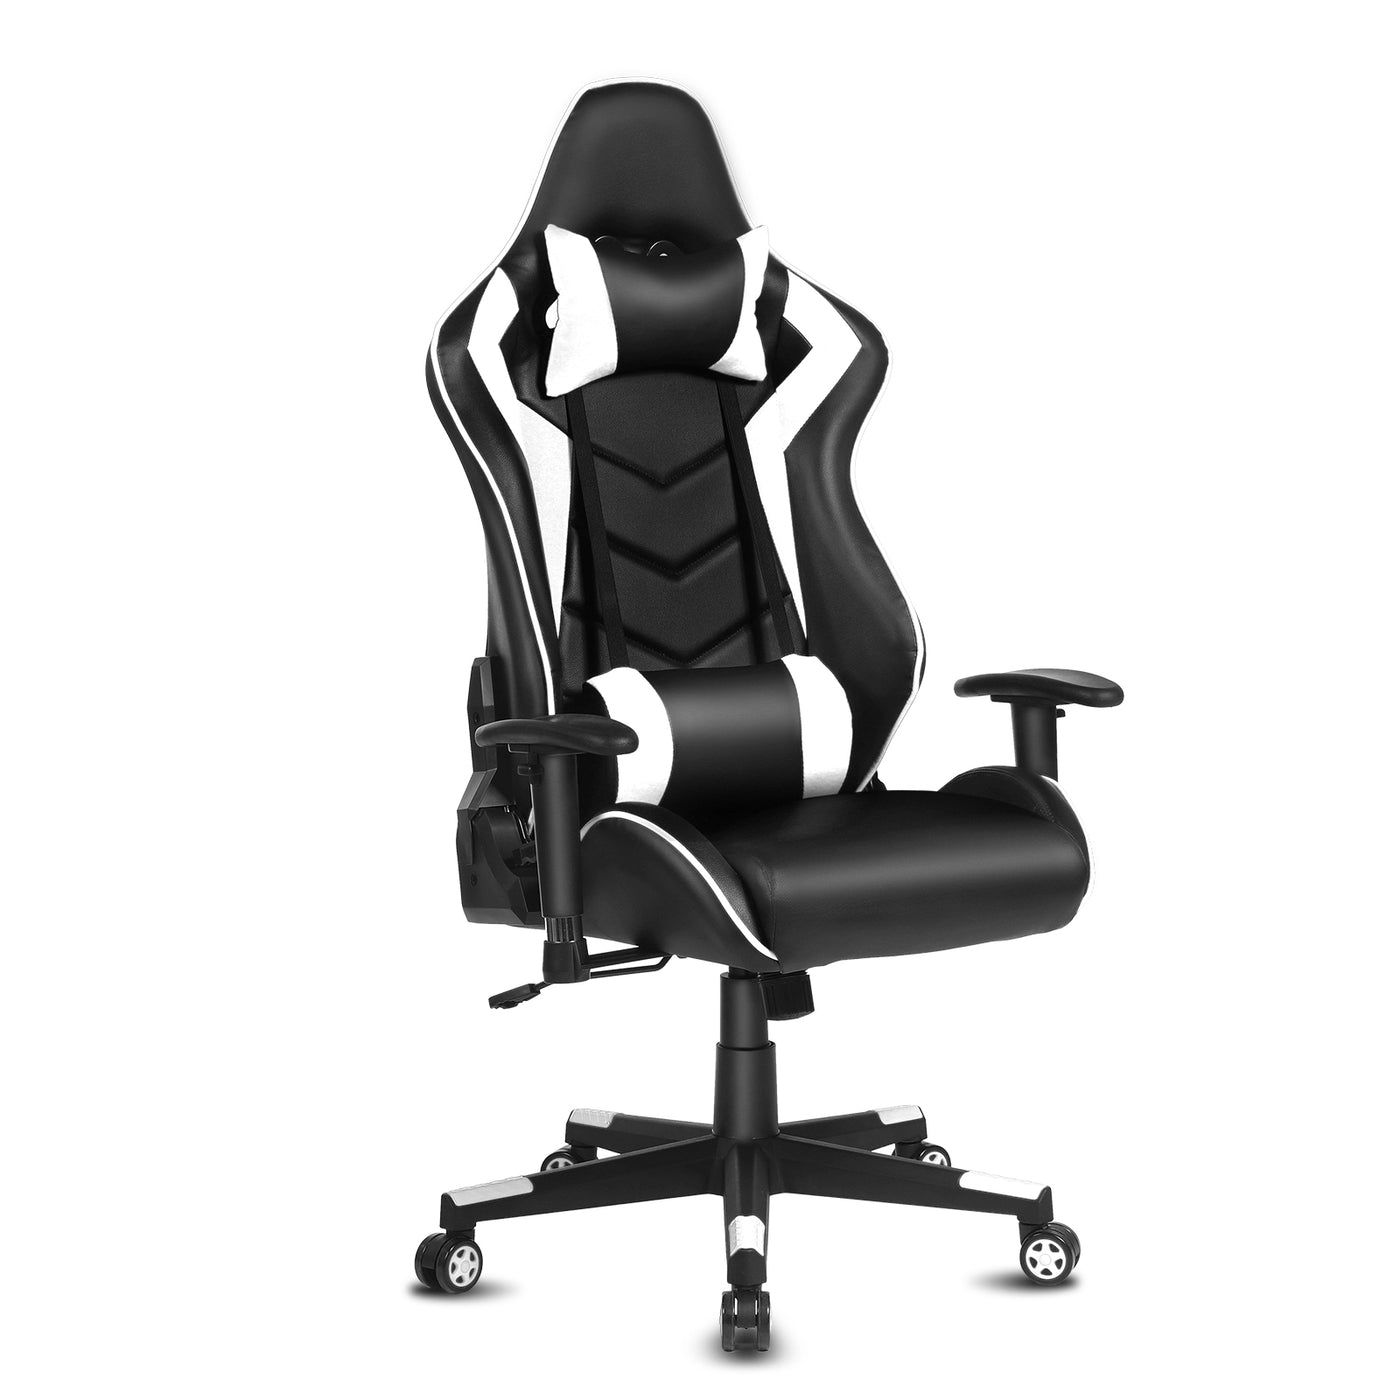 Ergonomic Office Computer Recliner Adjustable Desk Racing Gaming Chair Swivel